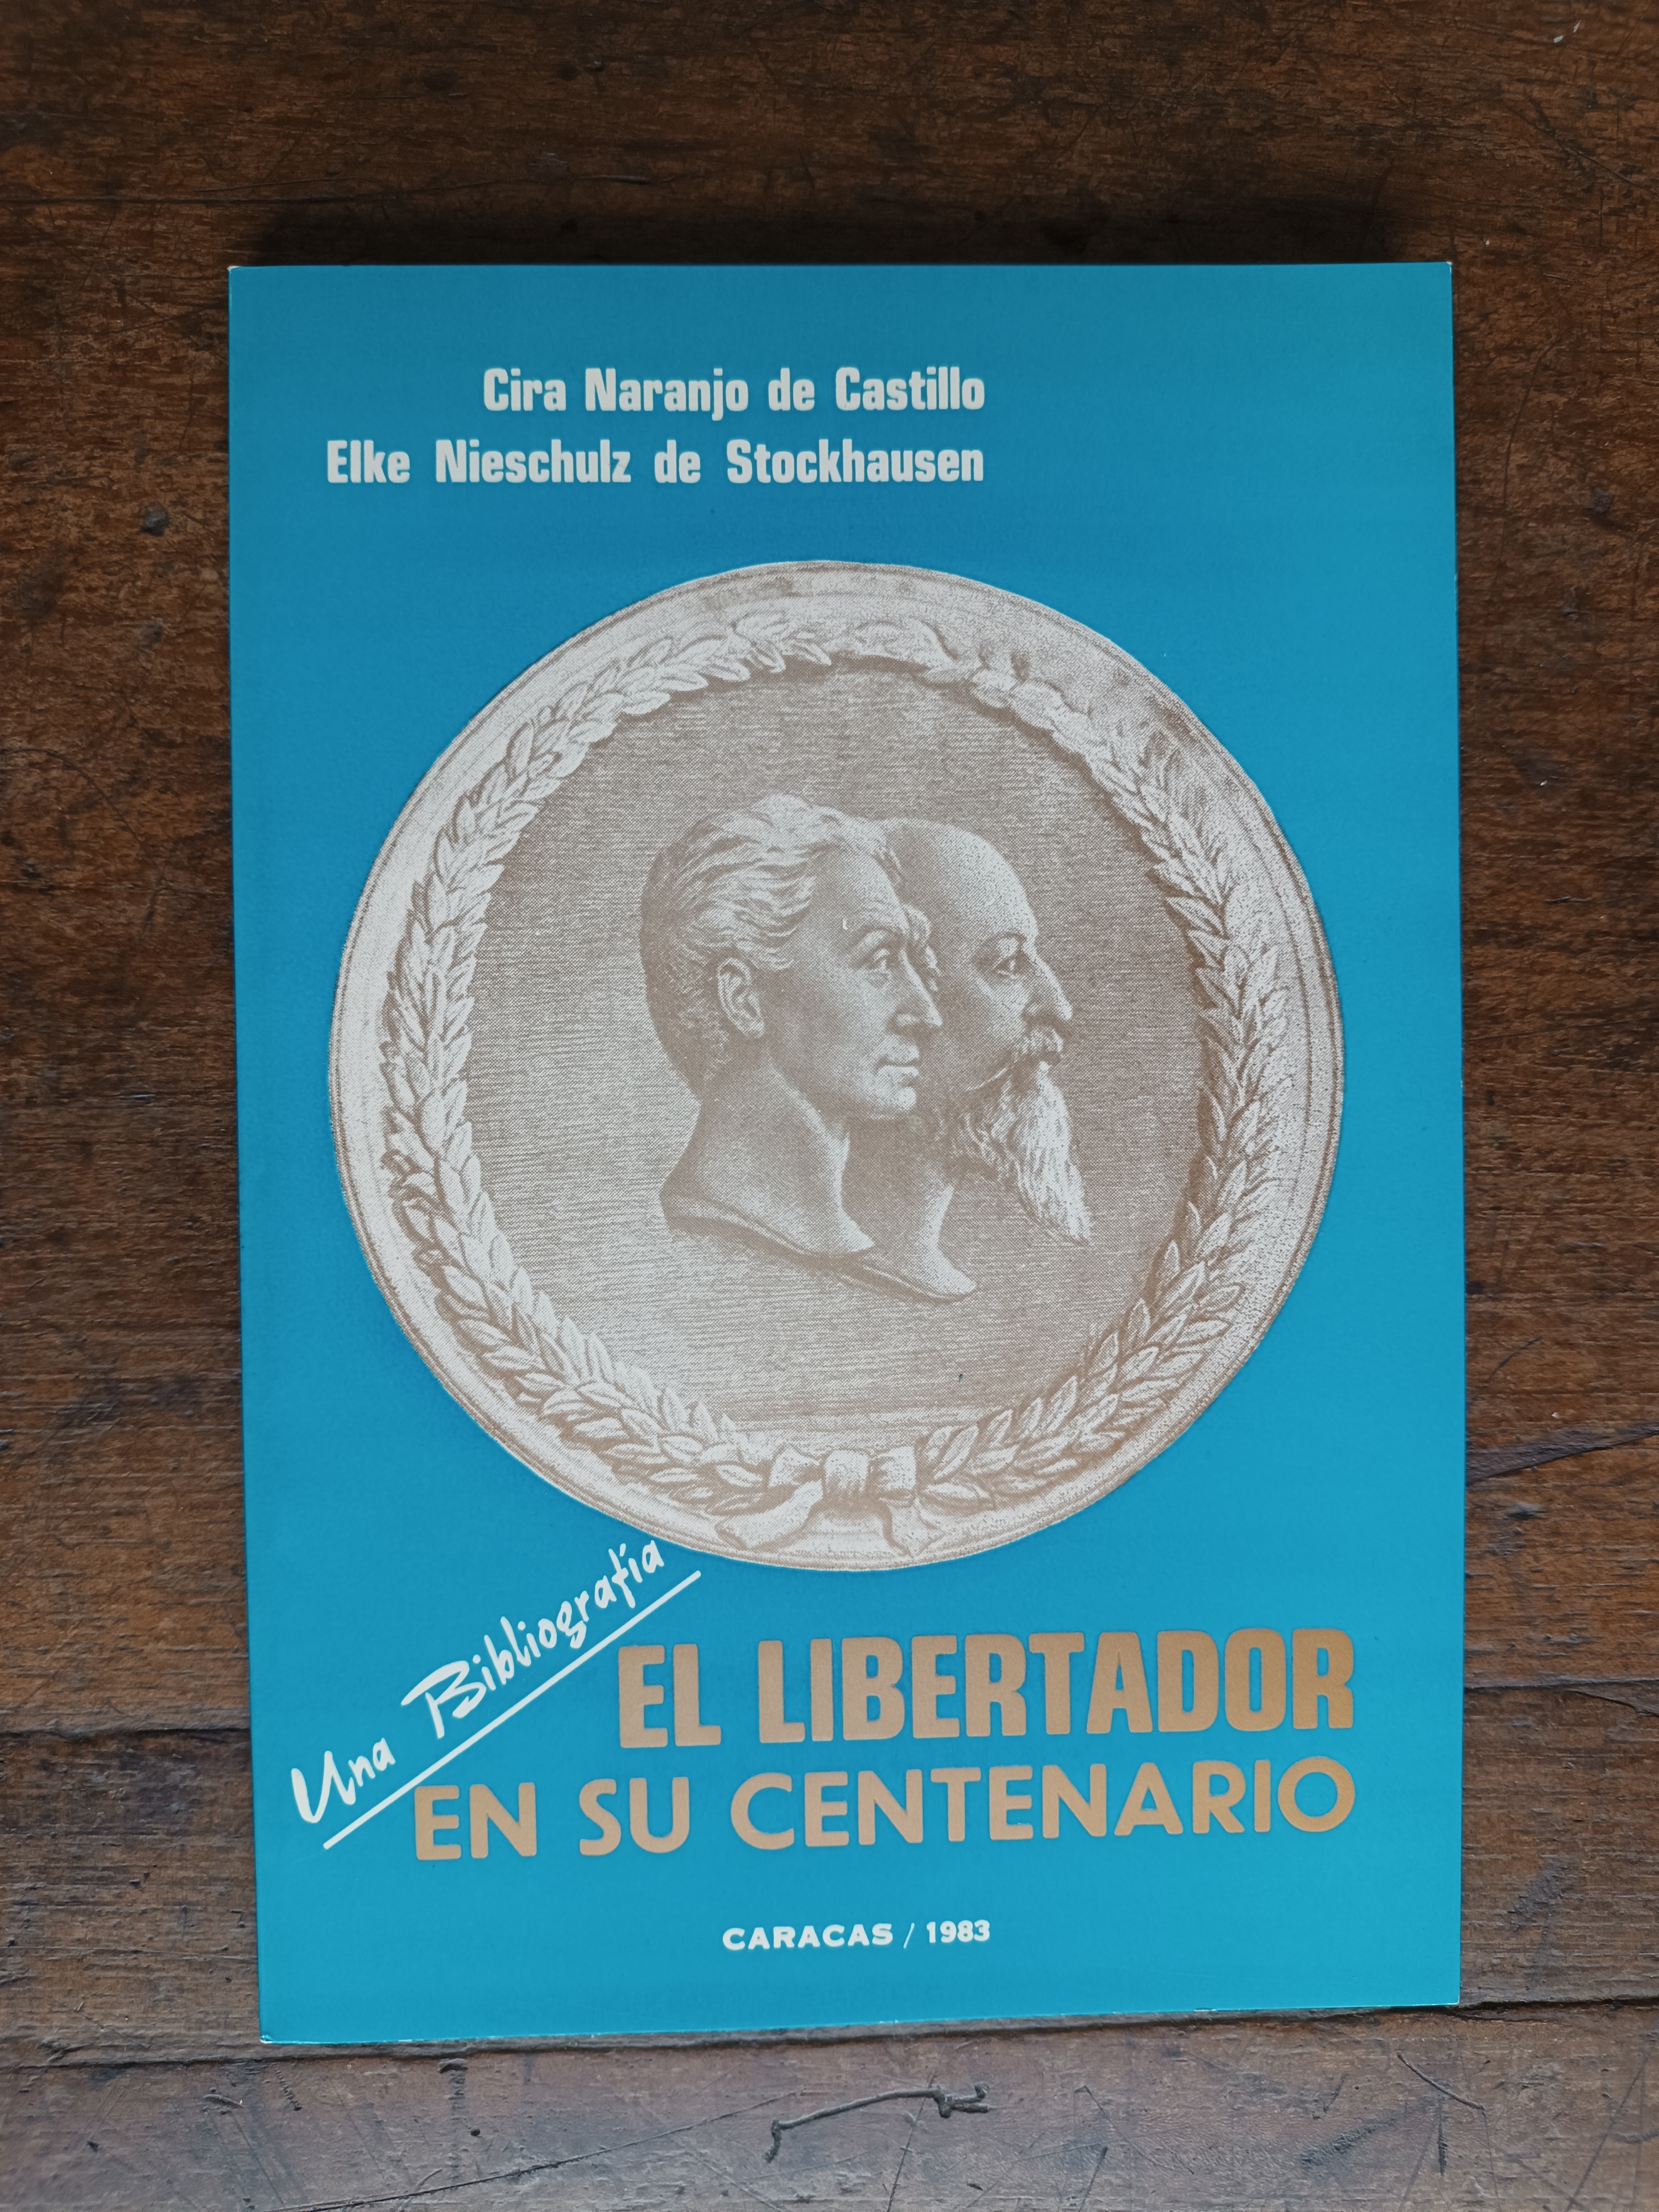 El Libertador en su Centenario, Una Bibliografía, de  Cira Naranjo de Castillo y Elke Nieschulz de Stockhausen